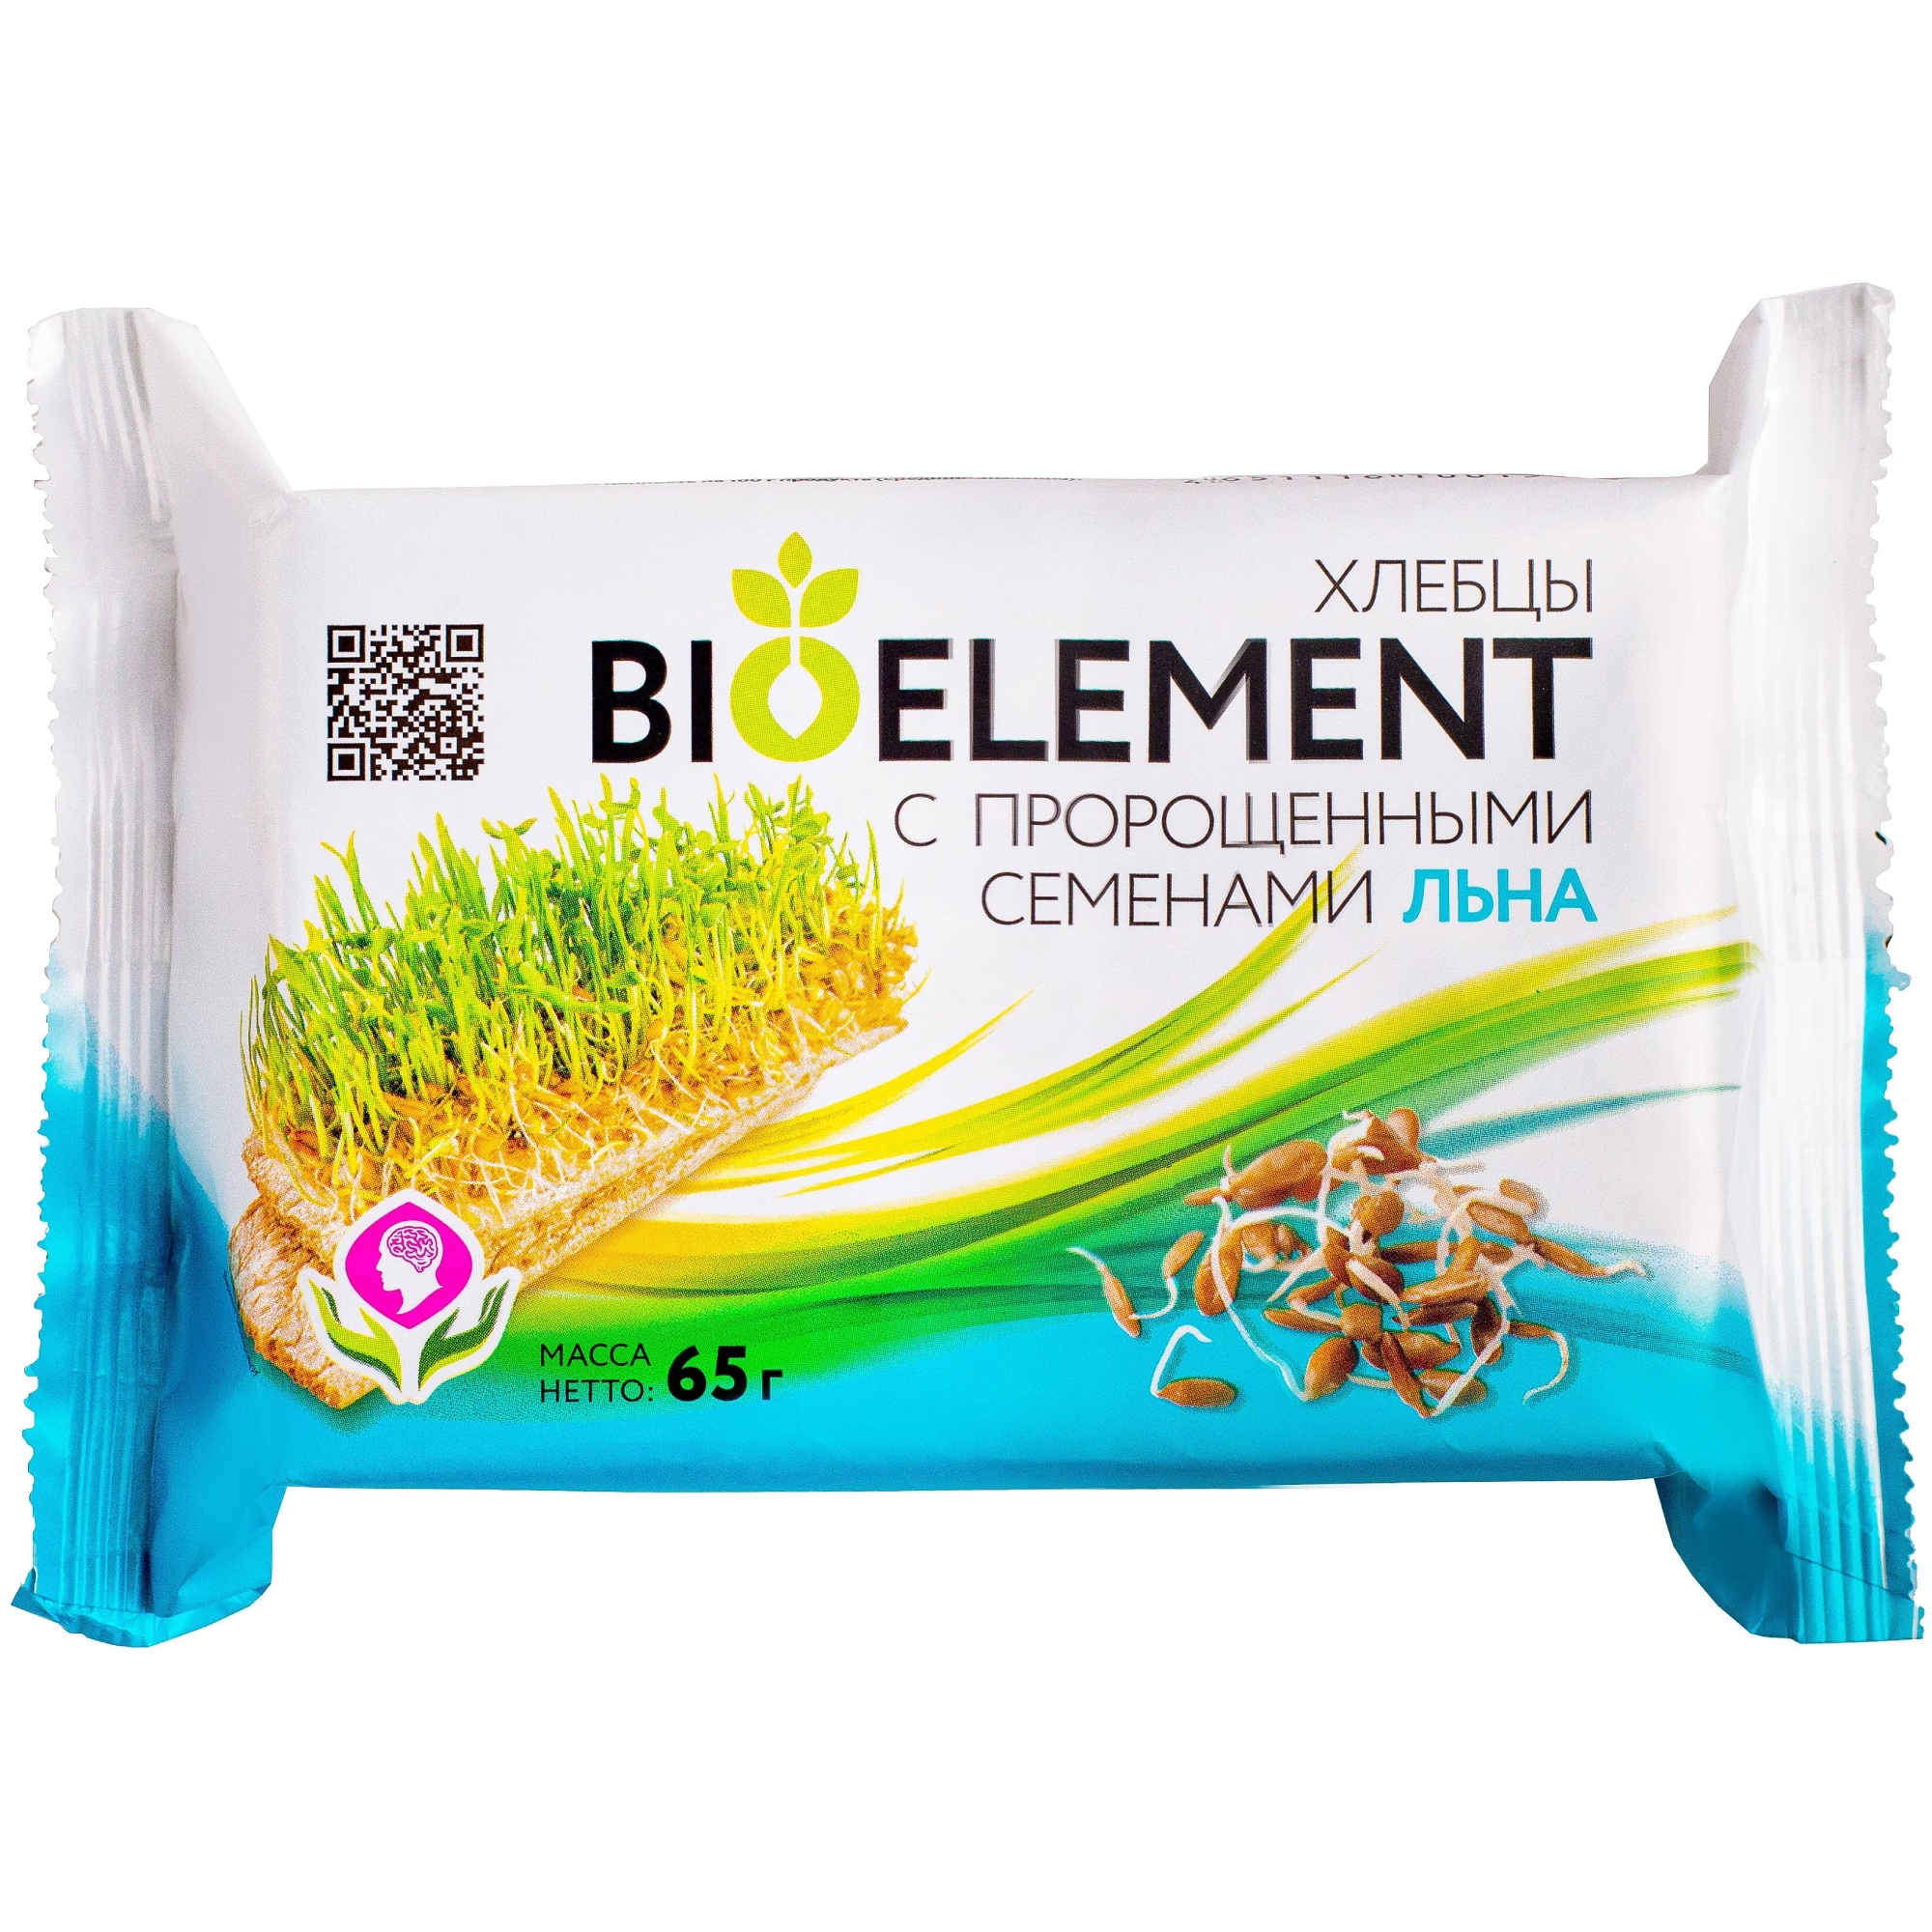 Хлебцы BioElement с пророщенными семенами льна, 65 г